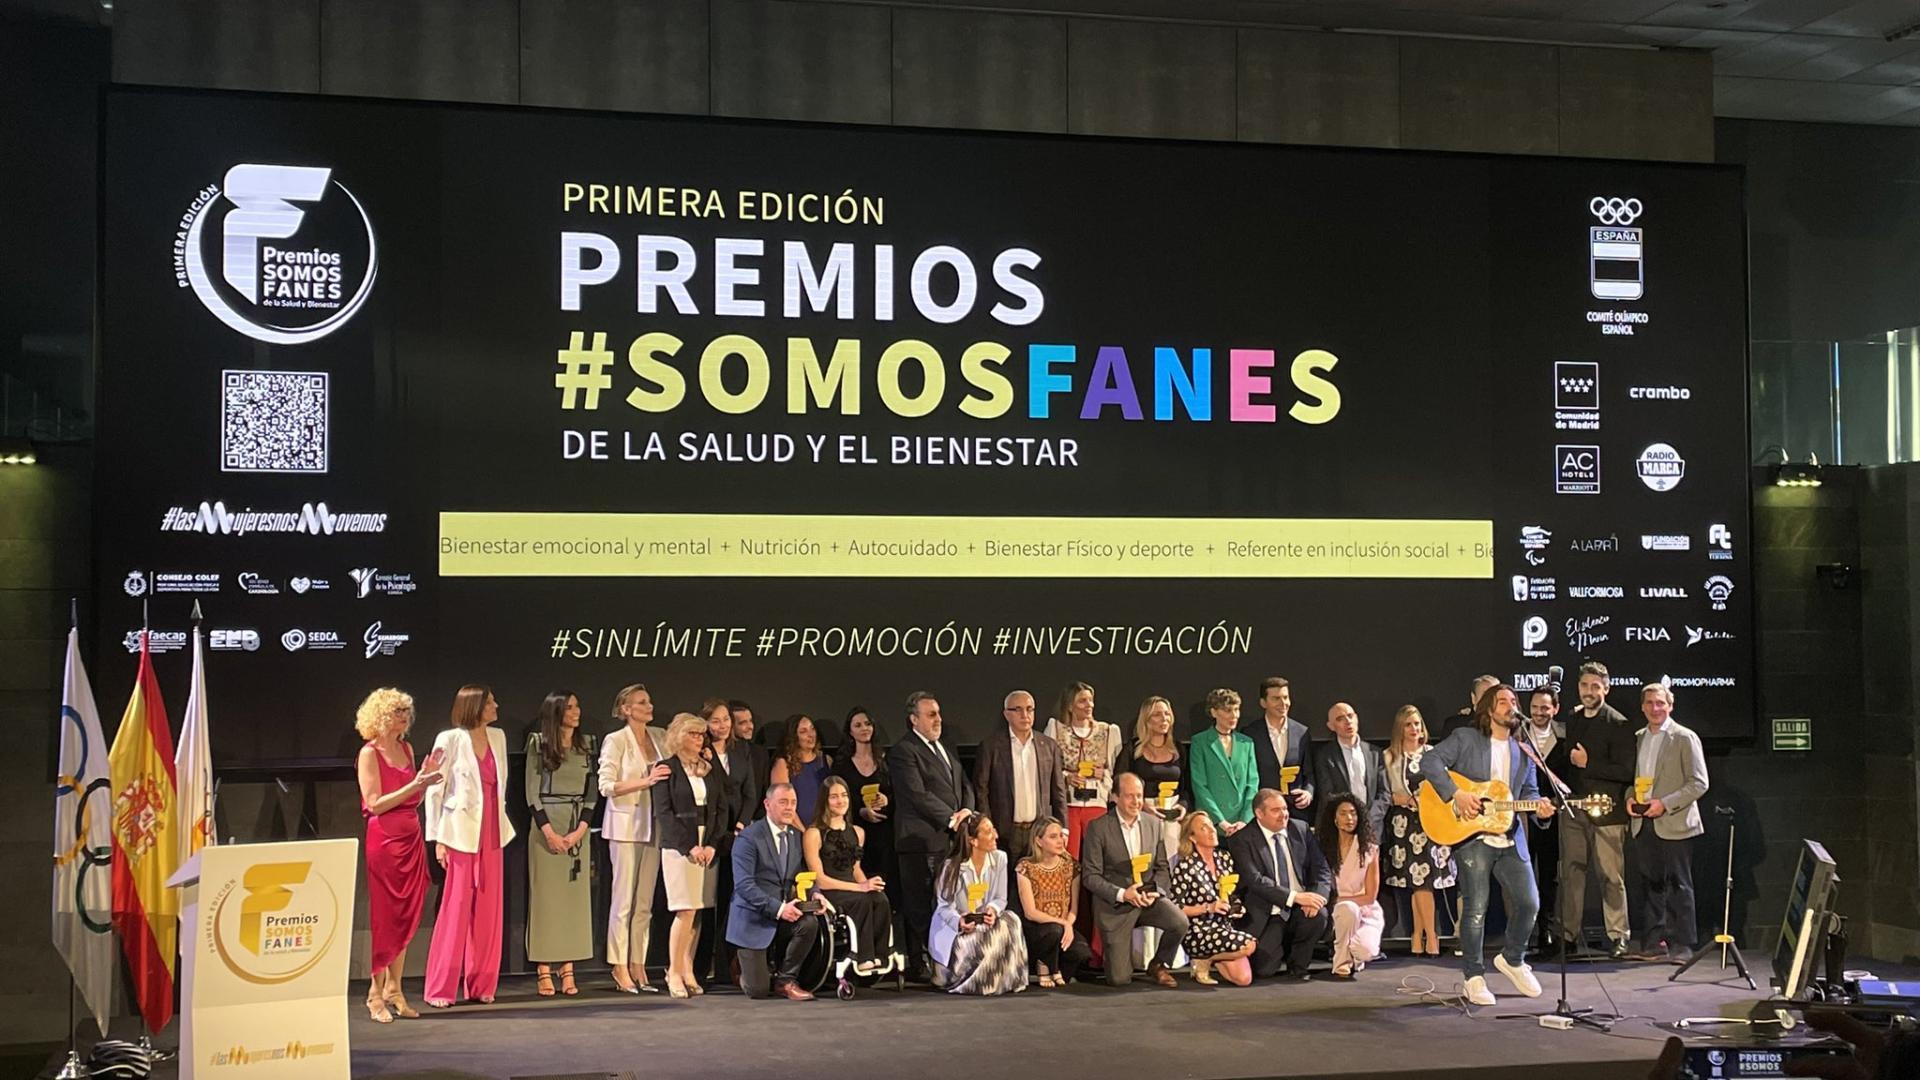 cisco garcía, ricky rubio y chema martínez entre los ganadores de la primera edición de los premios 'somos fanes'